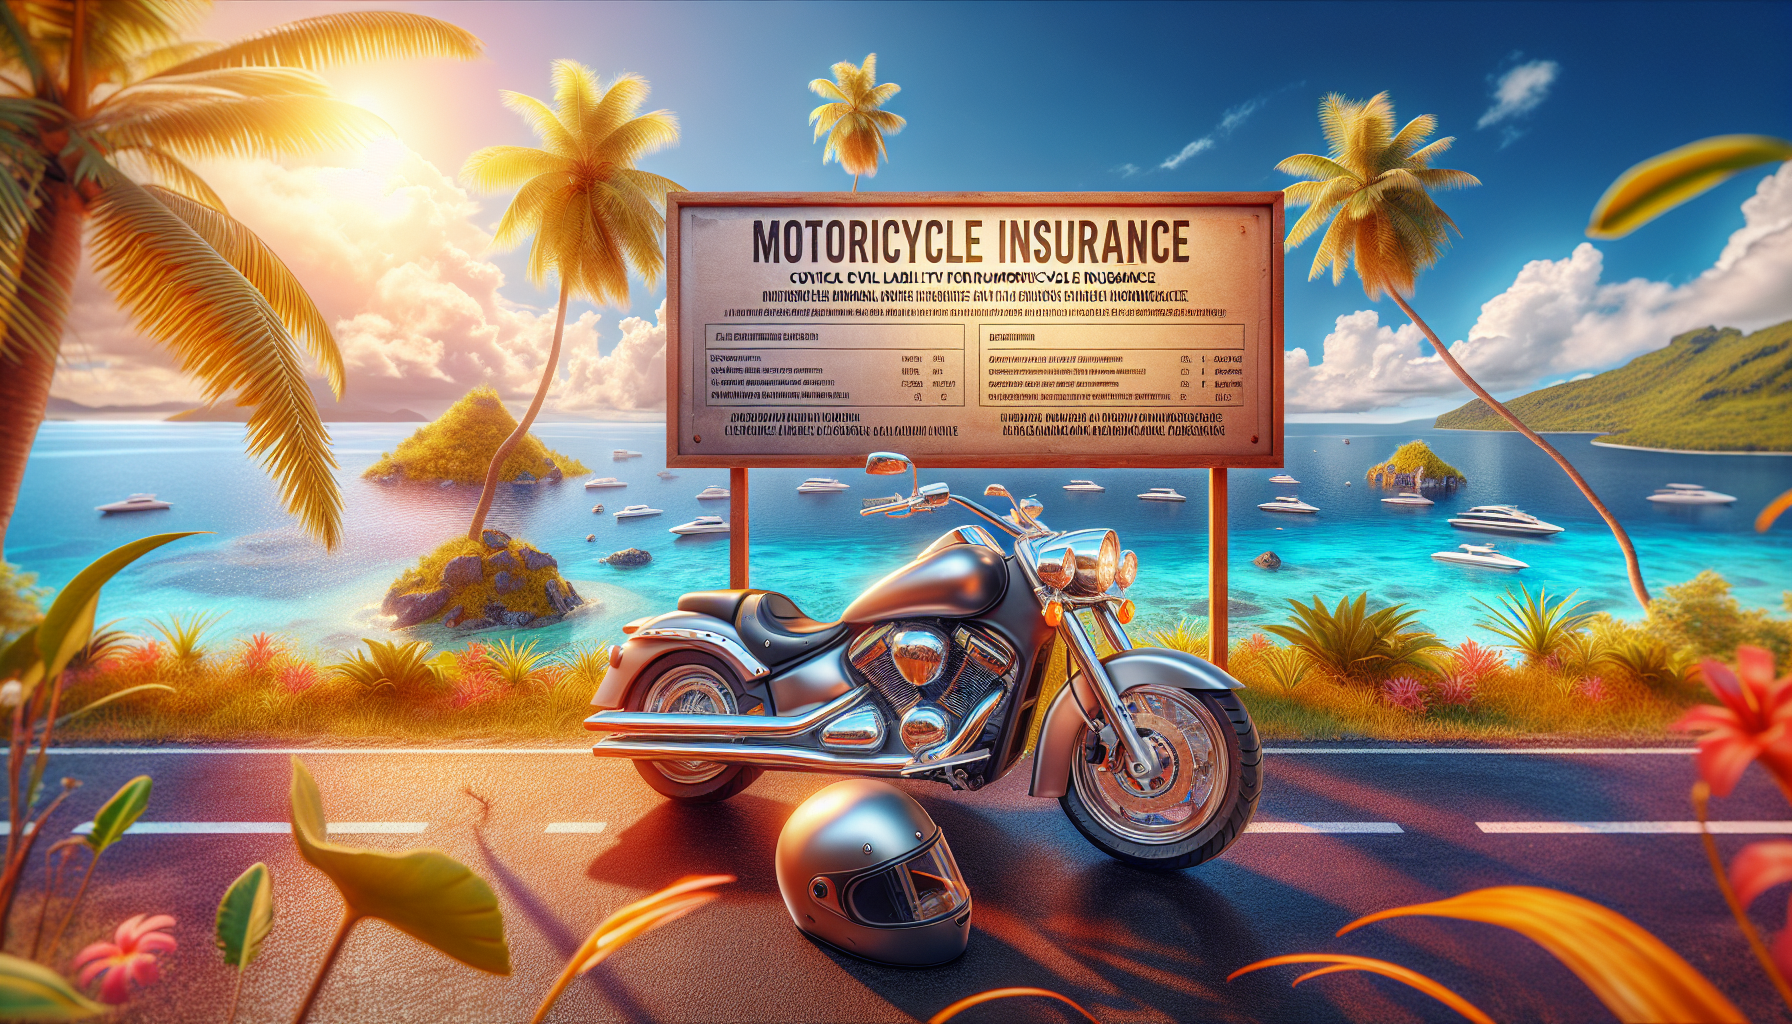 découvrez l'assurance moto 974 et la responsabilité civile pour une assurance moto à la réunion. trouvez la couverture idéale pour votre moto sur l'île.